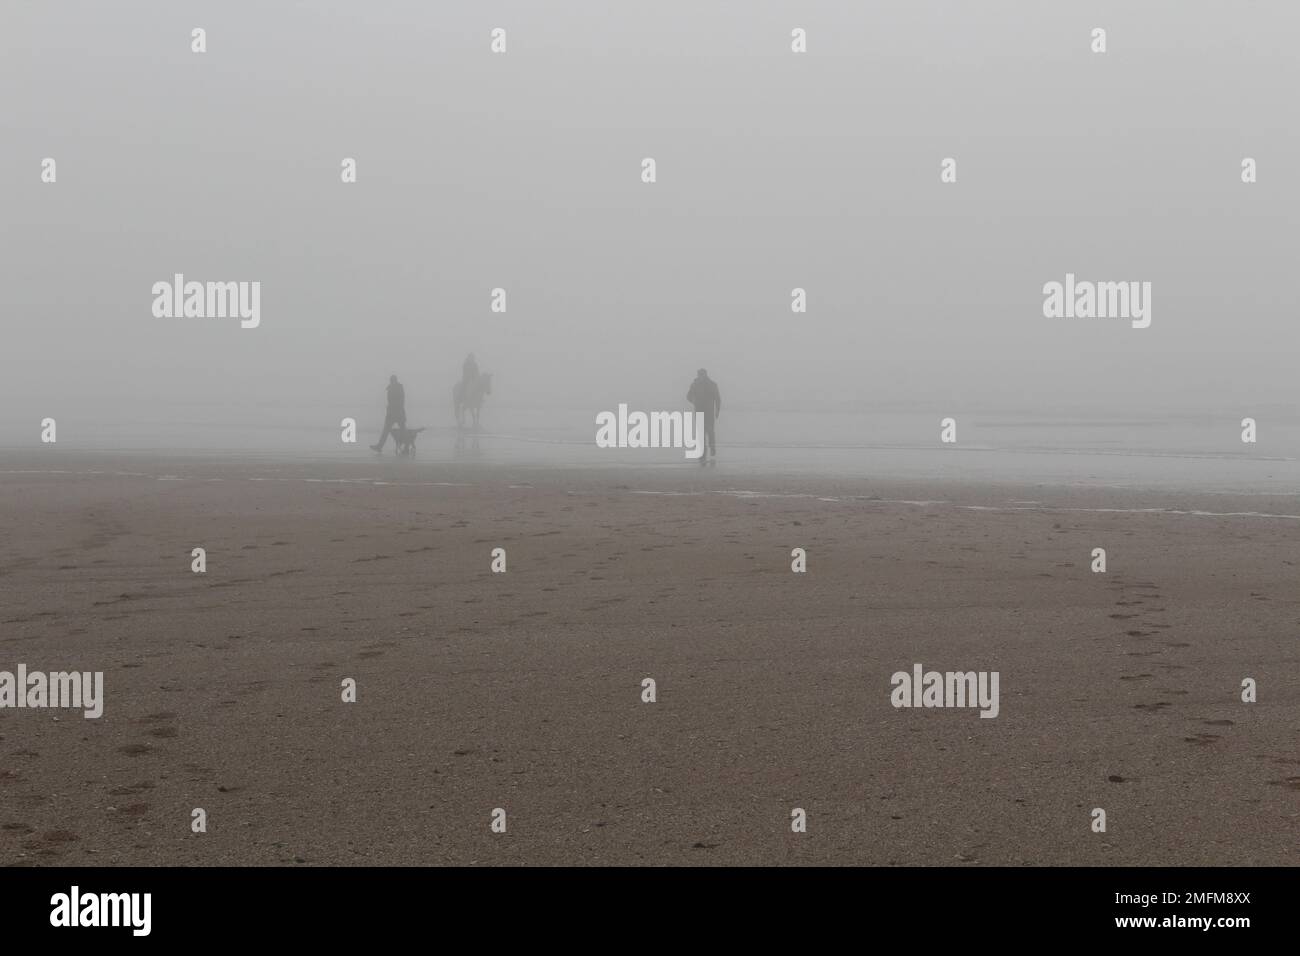 Eine Mischung von Leuten am Strand an einem nebligen, bedeckten Wintertag. Reiter, Hundeführer und allein laufender Mensch, Depression, allein zusammen Konzept Stockfoto